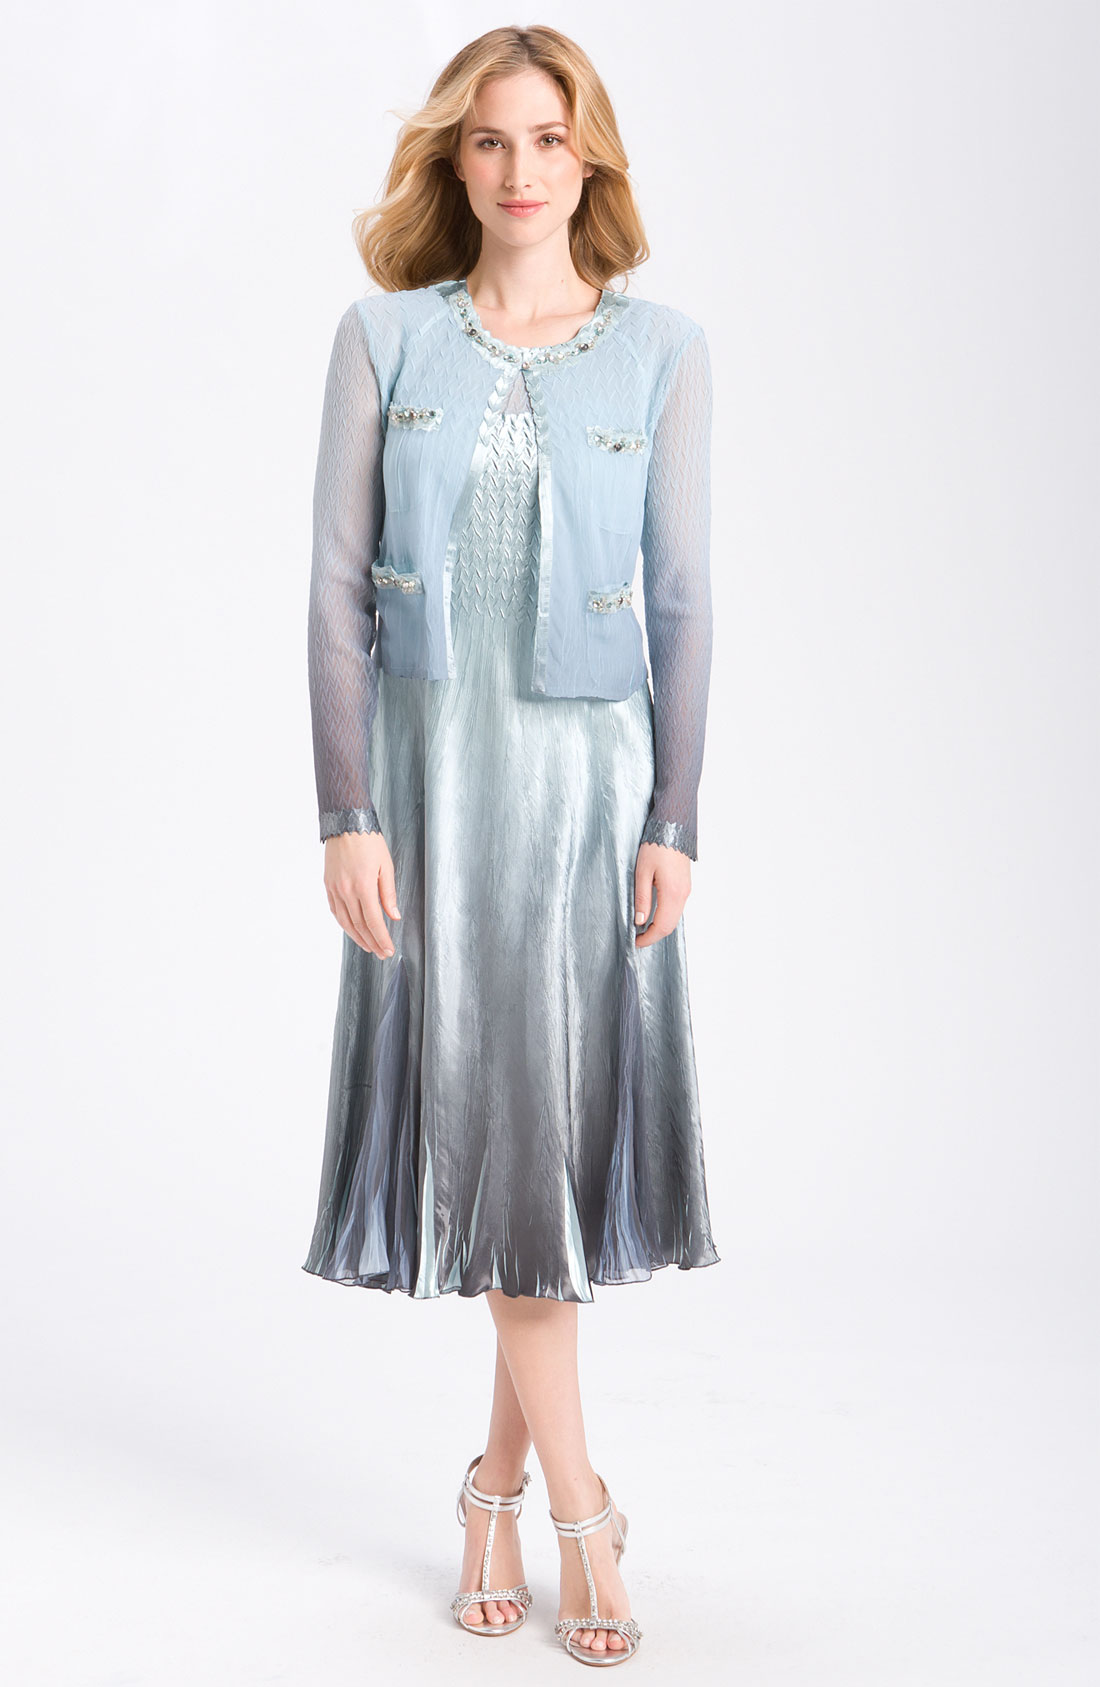 Komarov Sleeveless Chiffon Dress & Jacket Sz XL | eBay